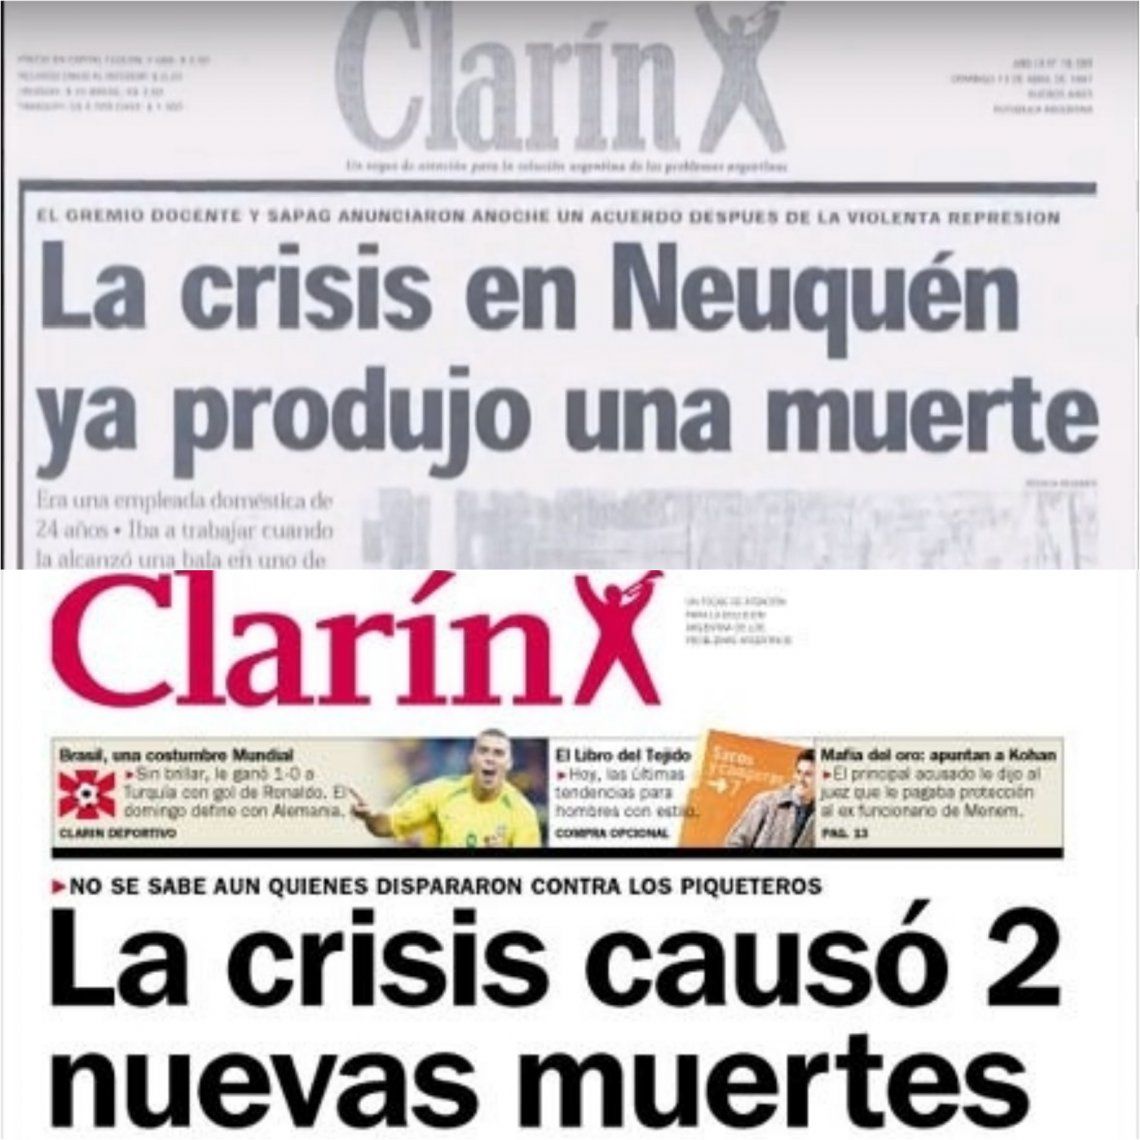 Cuando asesinaron a Teresa Rodríguez en Neuquén, Clarín tituló casi de idéntica manera a cuando fusilaron a Darío y Maxi en Avellaneda. Una praxis sistémica. 